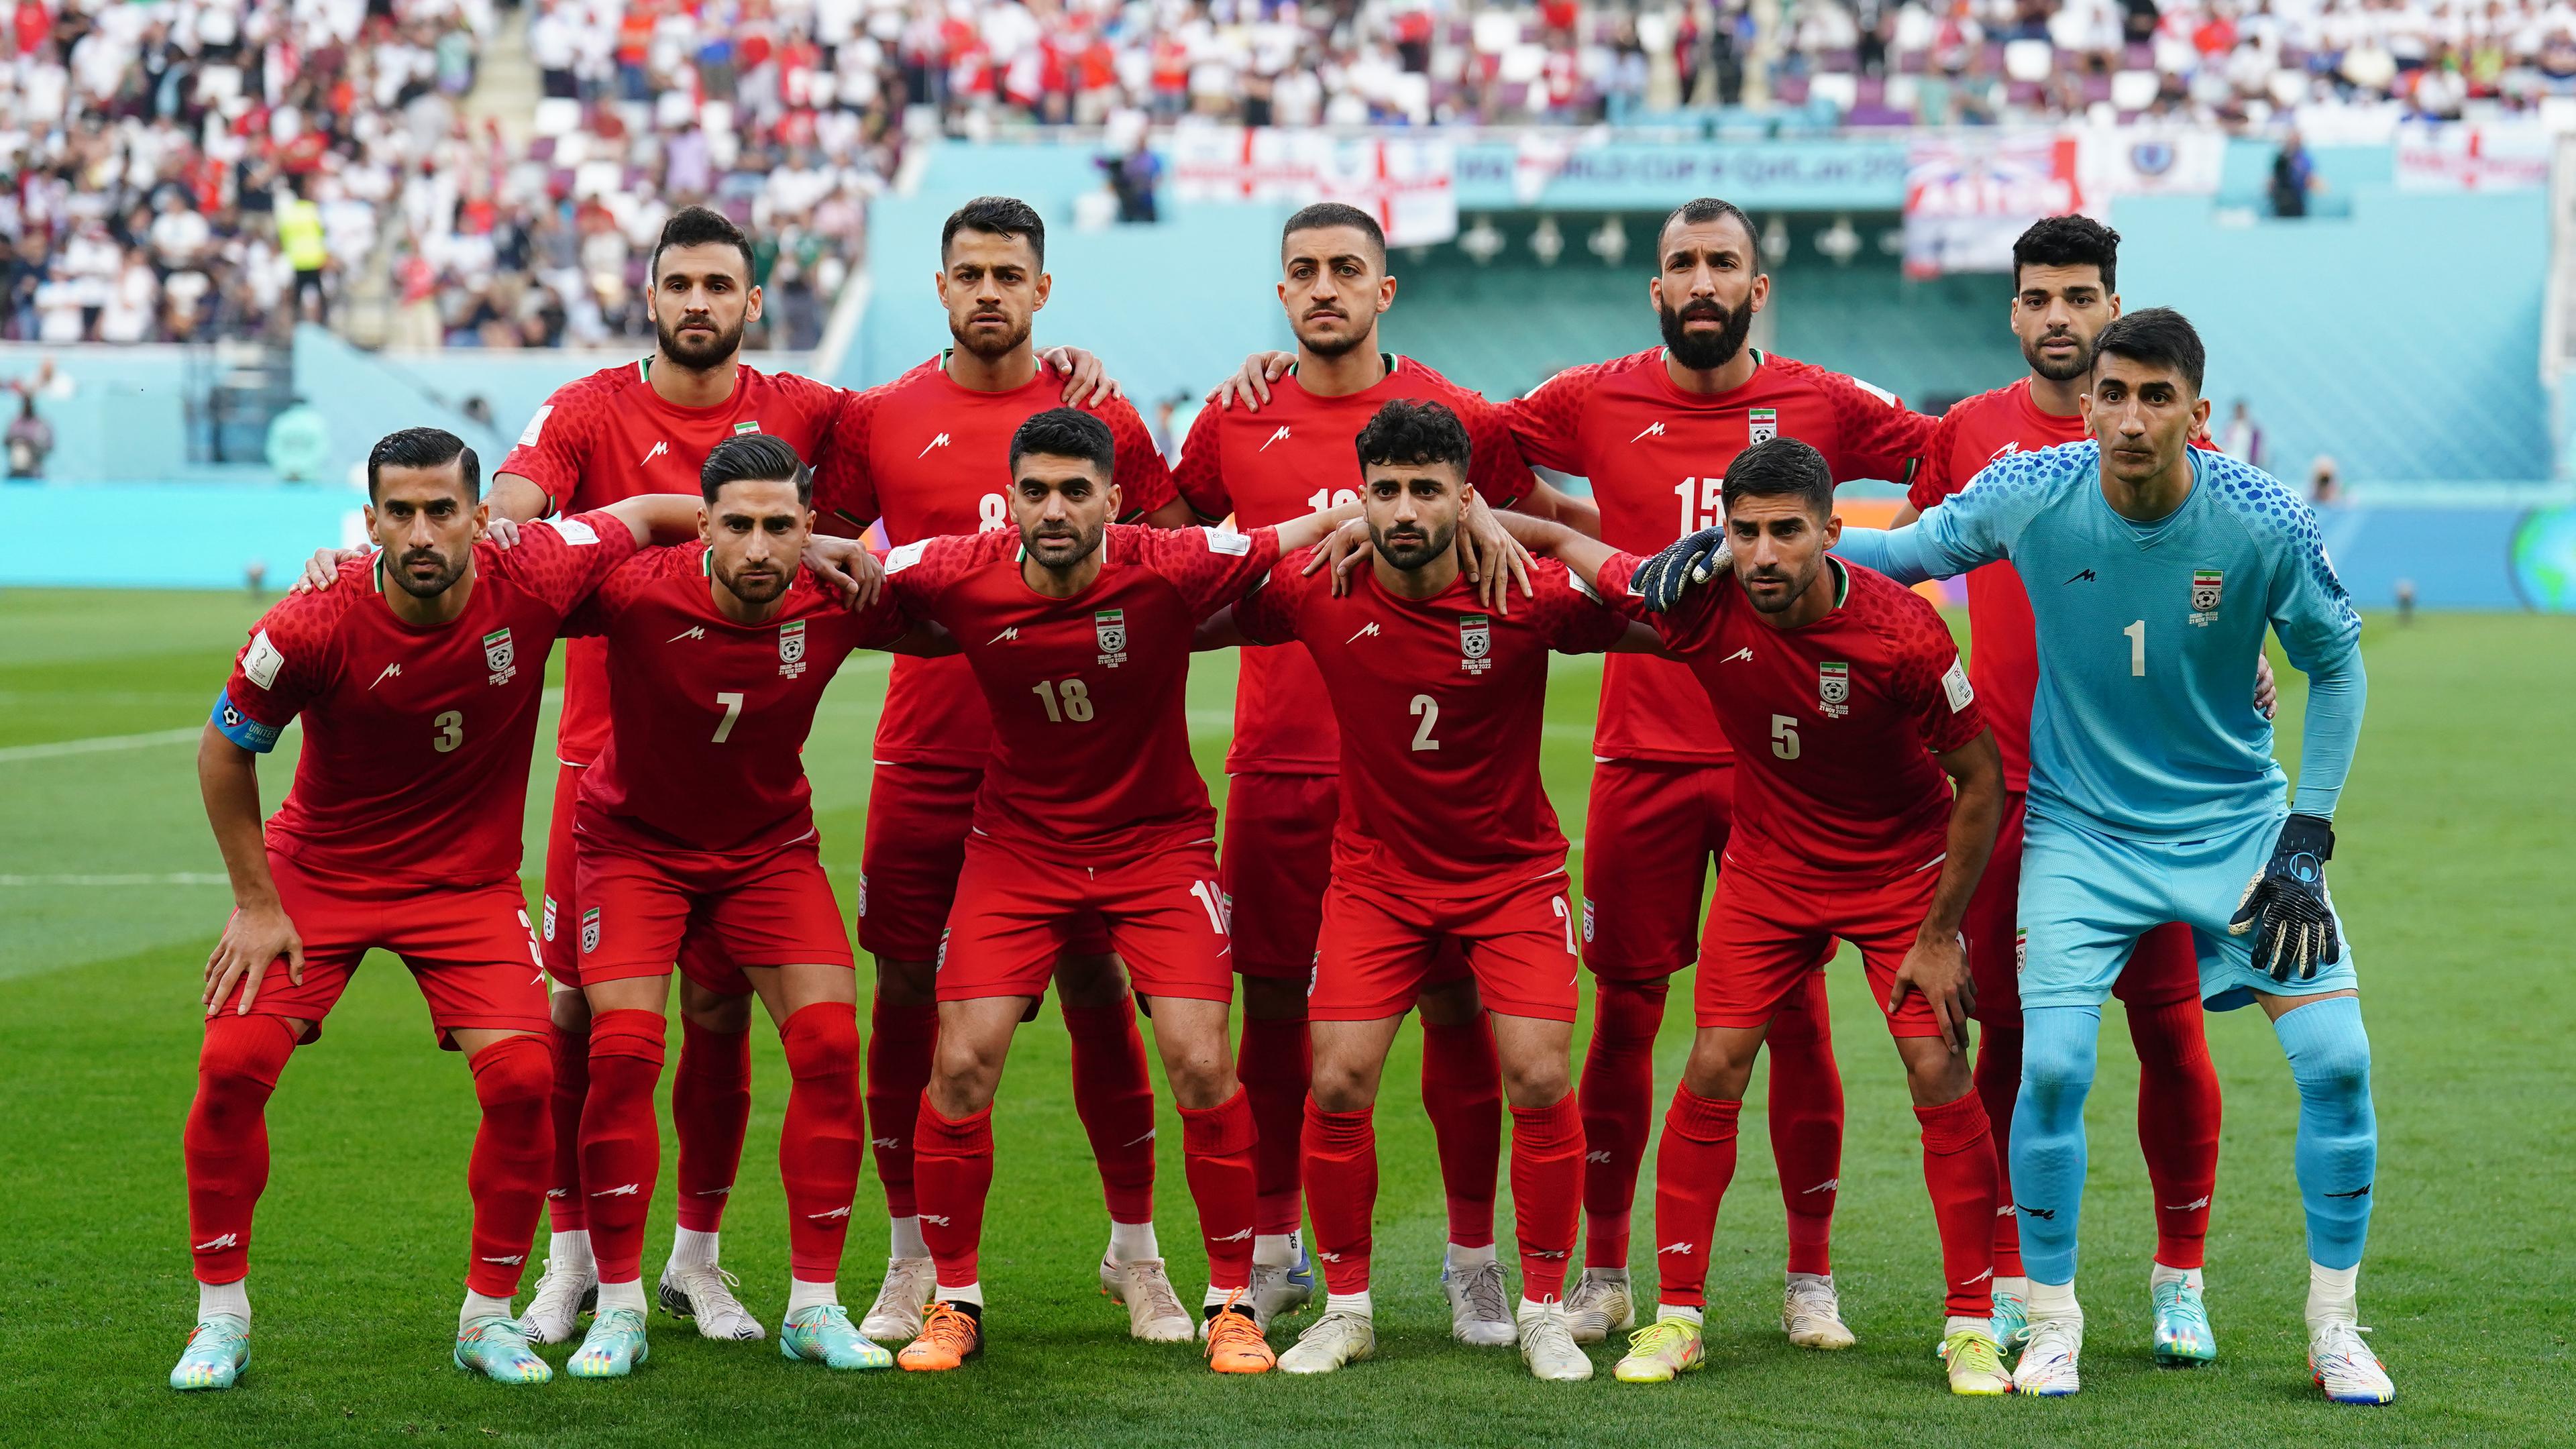 Nationalelf des Iran bei der WM Hymnen-Protest mit Folgen